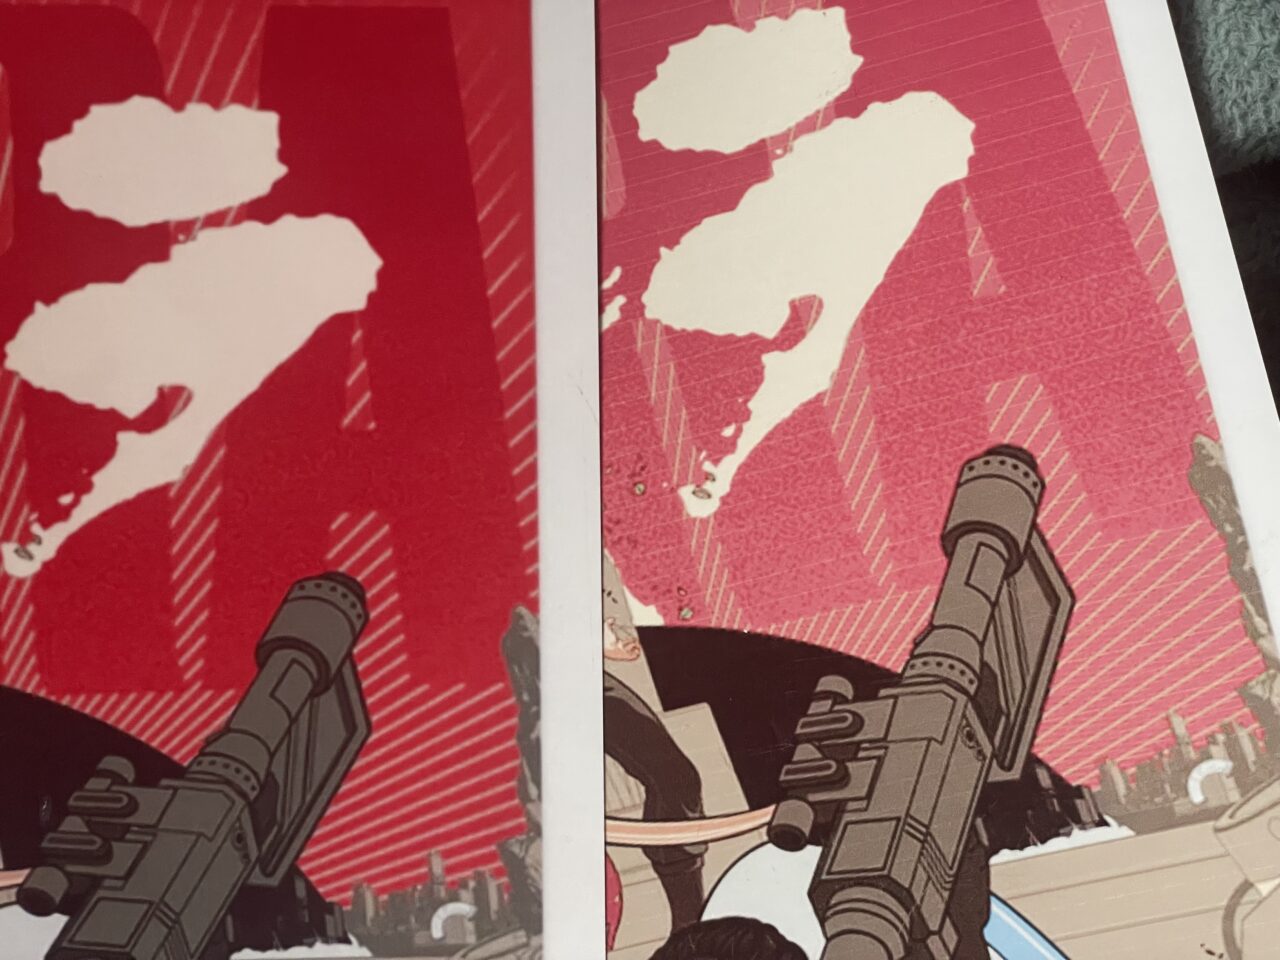 Grafika komiksowa przedstawiająca osobę trzymającą futurystyczną broń skierowaną w górę na tle czerwonego nieba z białymi plamami.